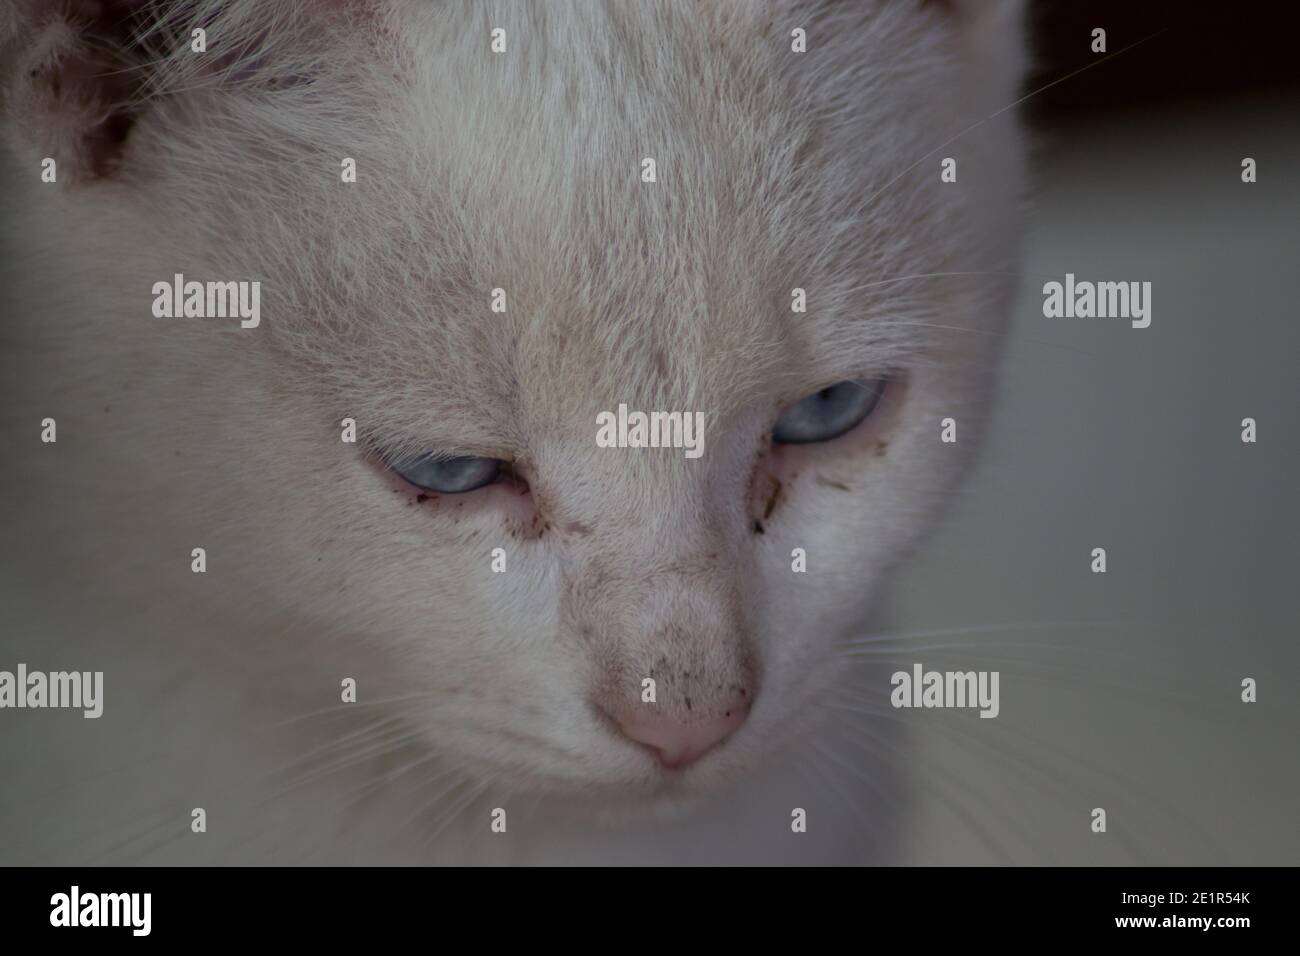 Bellissimo primo piano ritratto di gatto vagato all'aperto, animale senza casa, carino gattino di strada, gatto bianco con gli occhi blu belli Foto Stock